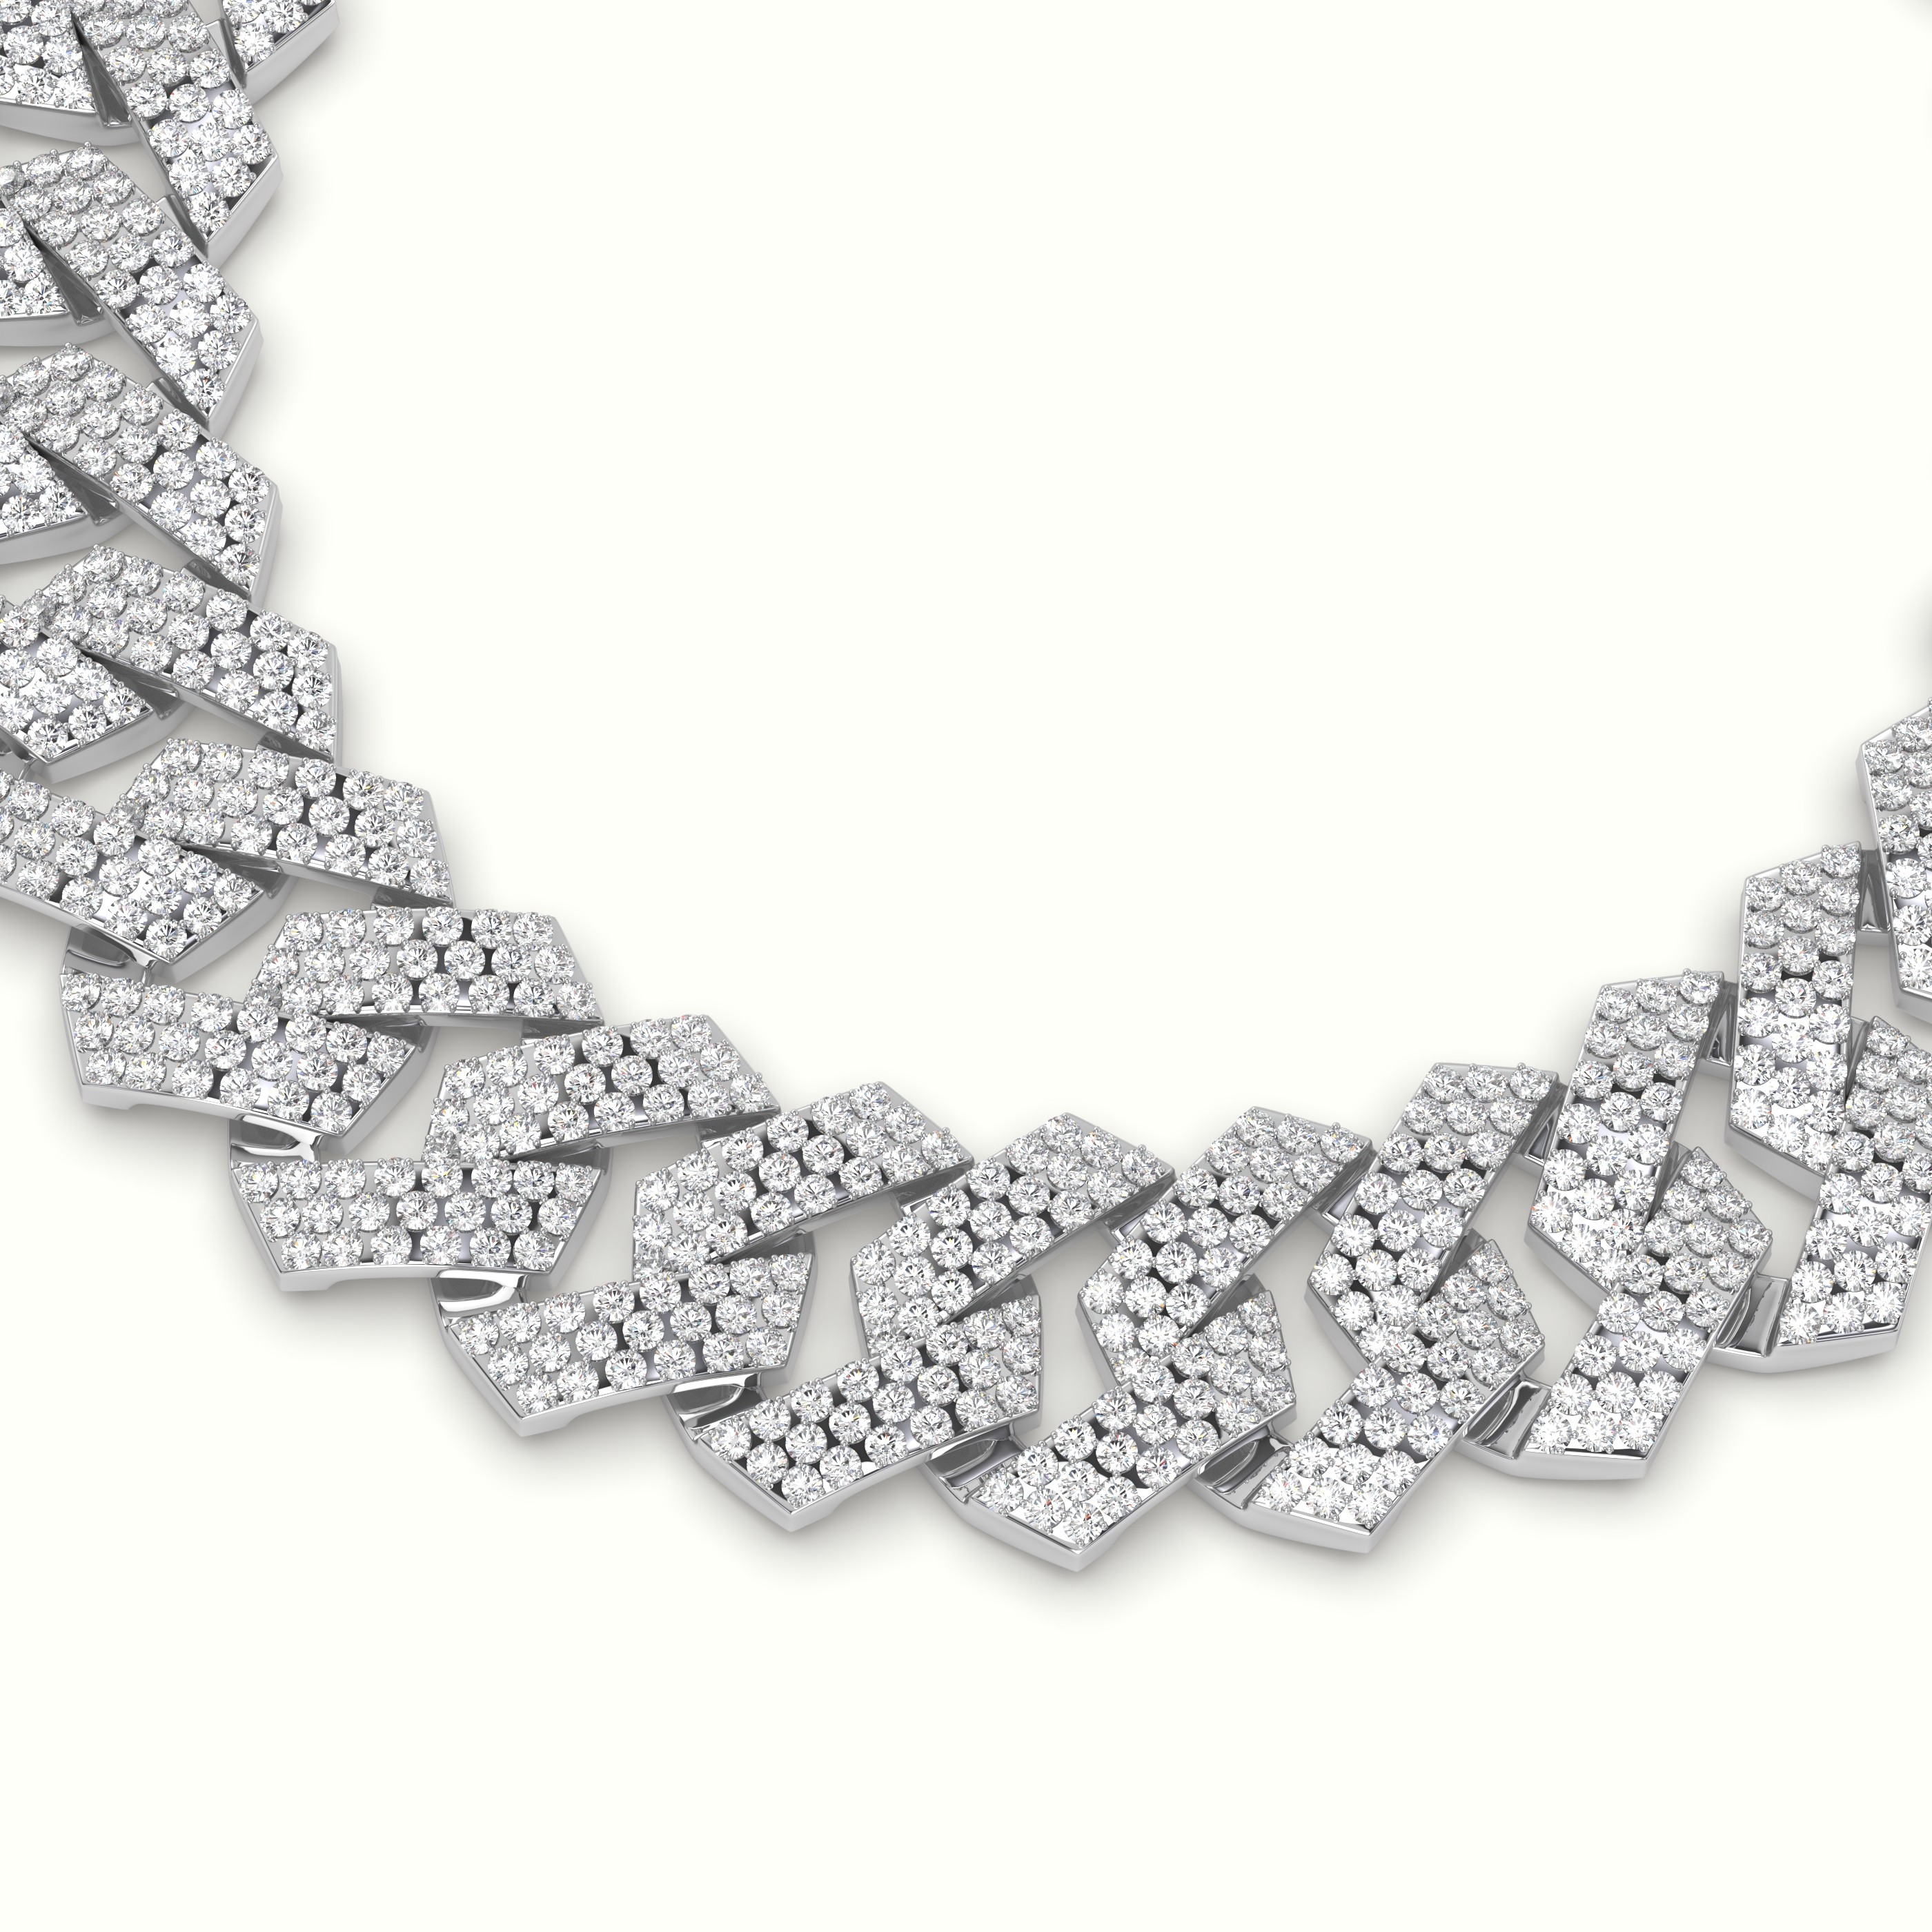 18k white gold 14mm diamond cuban link bracelet Photos & images